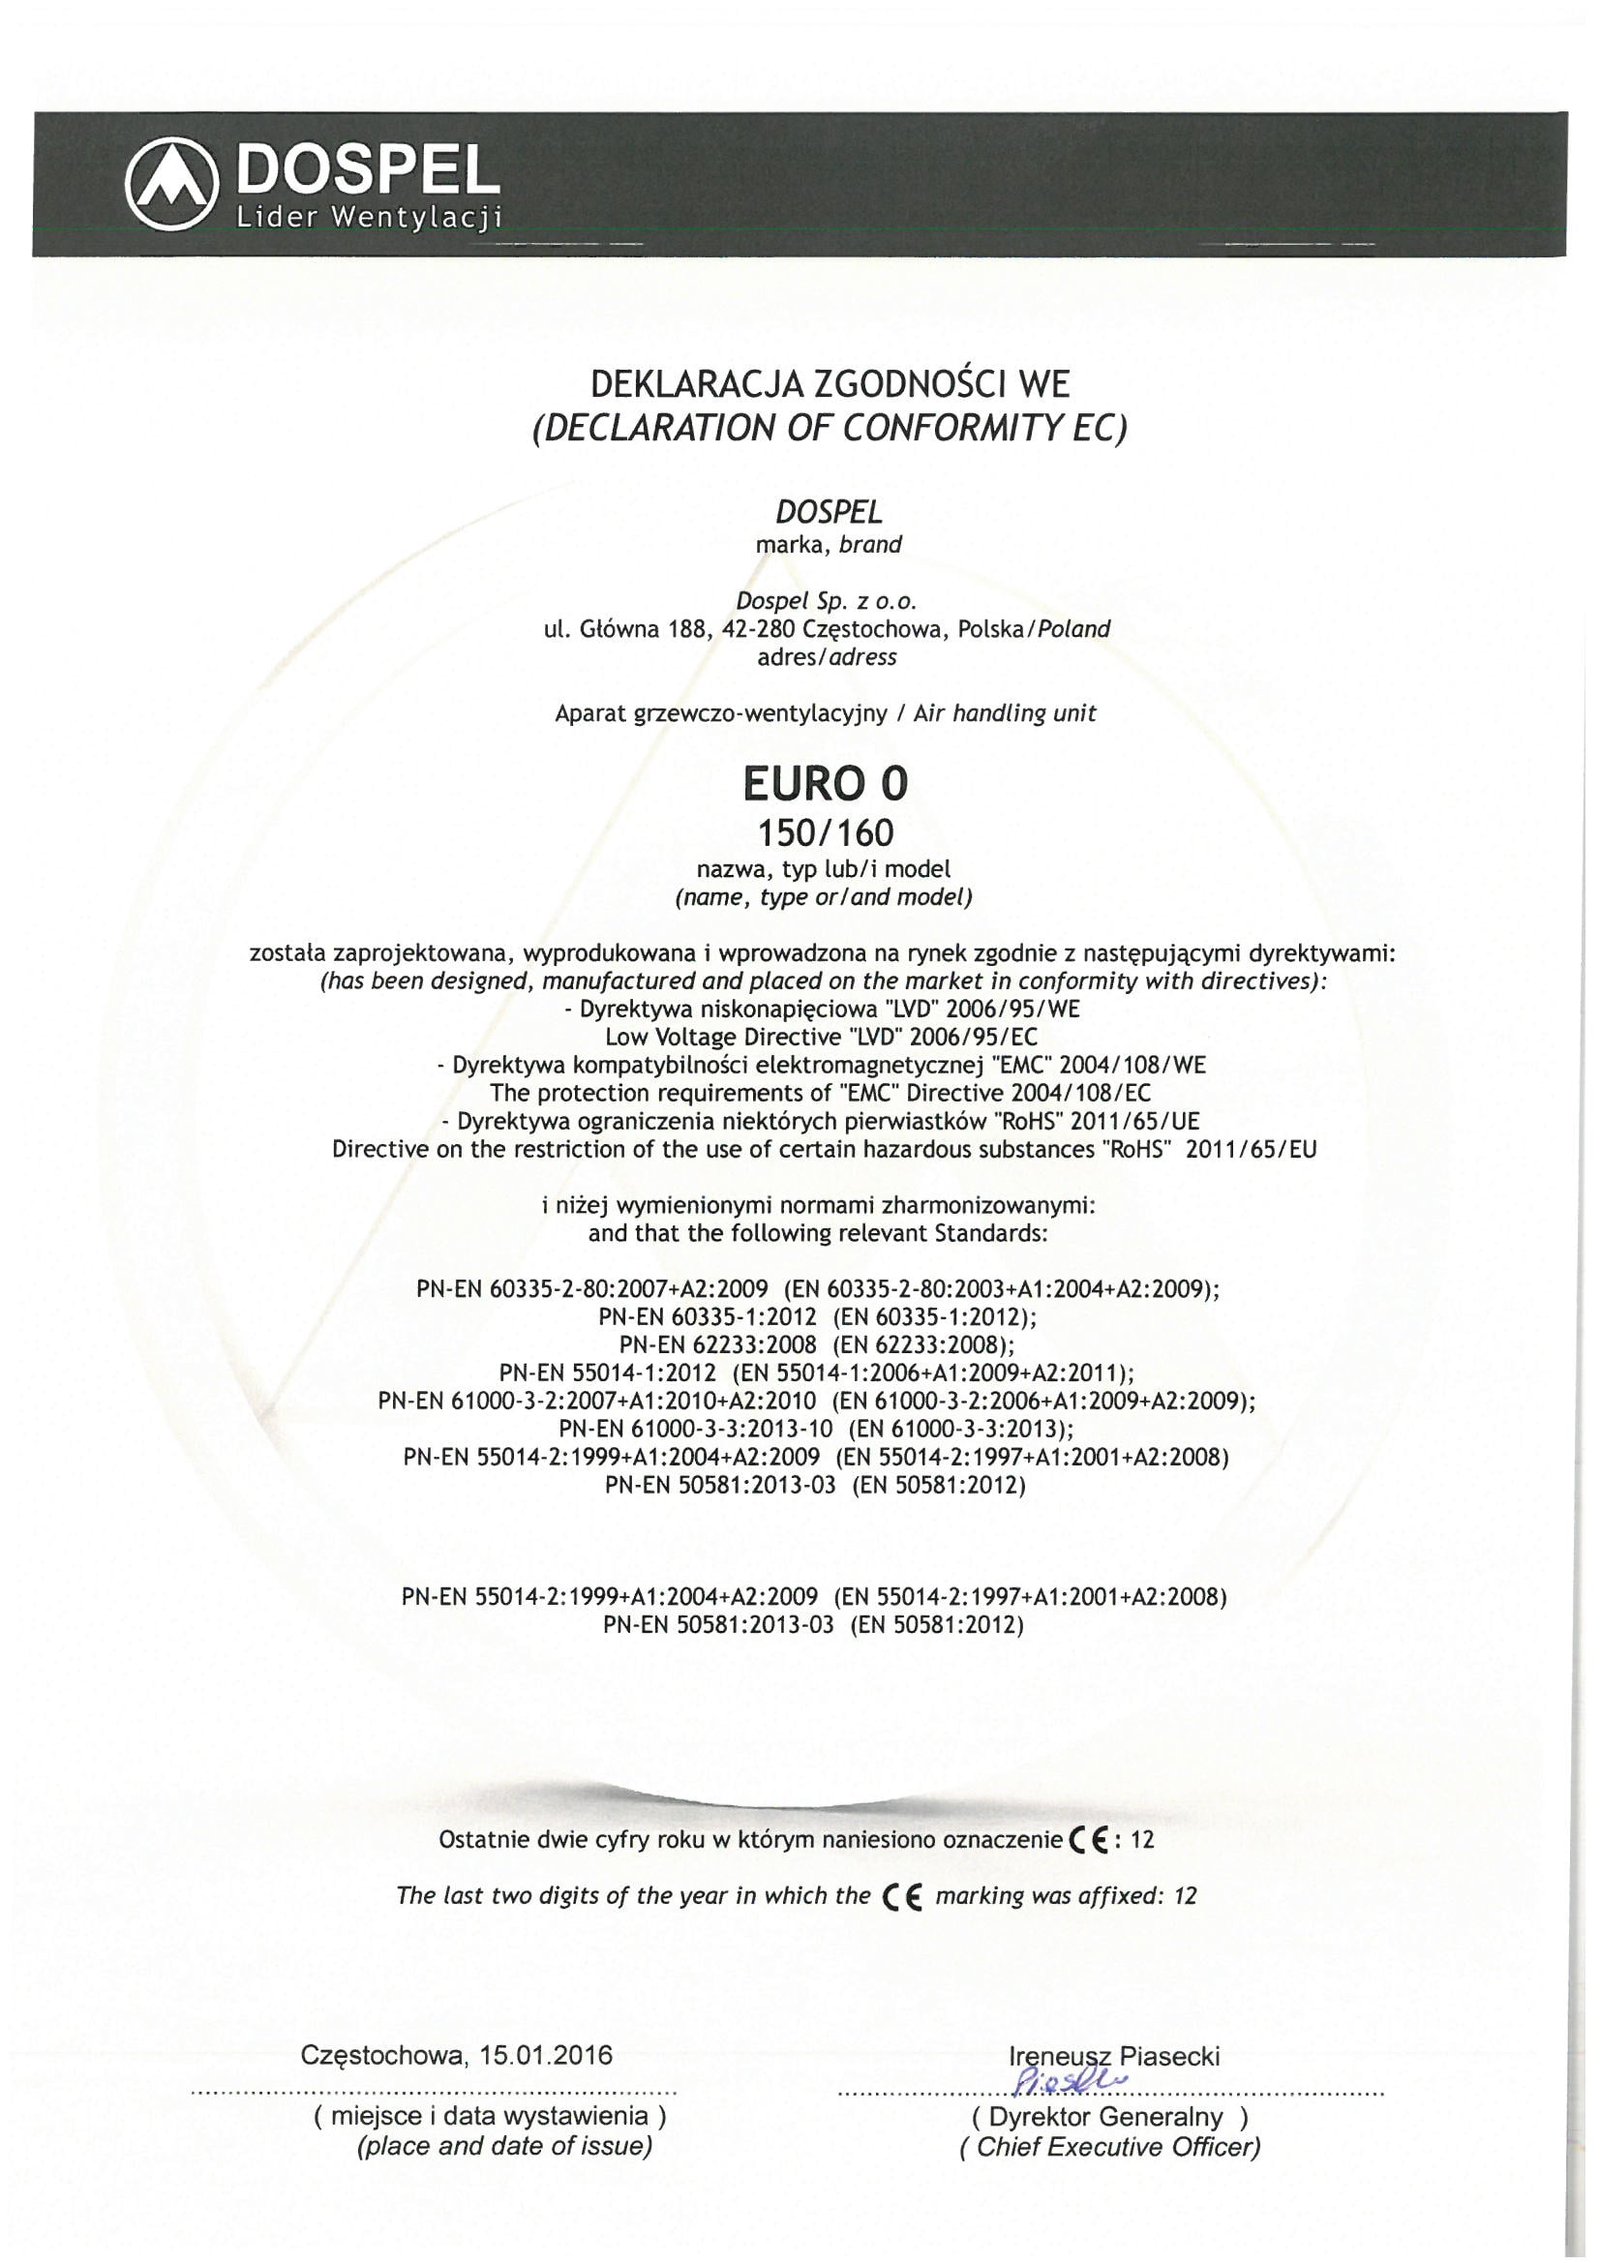 Wentylator domowy, EURO 0, certyfikat, deklaracja zgodności, producent wentylatorów, Dospel